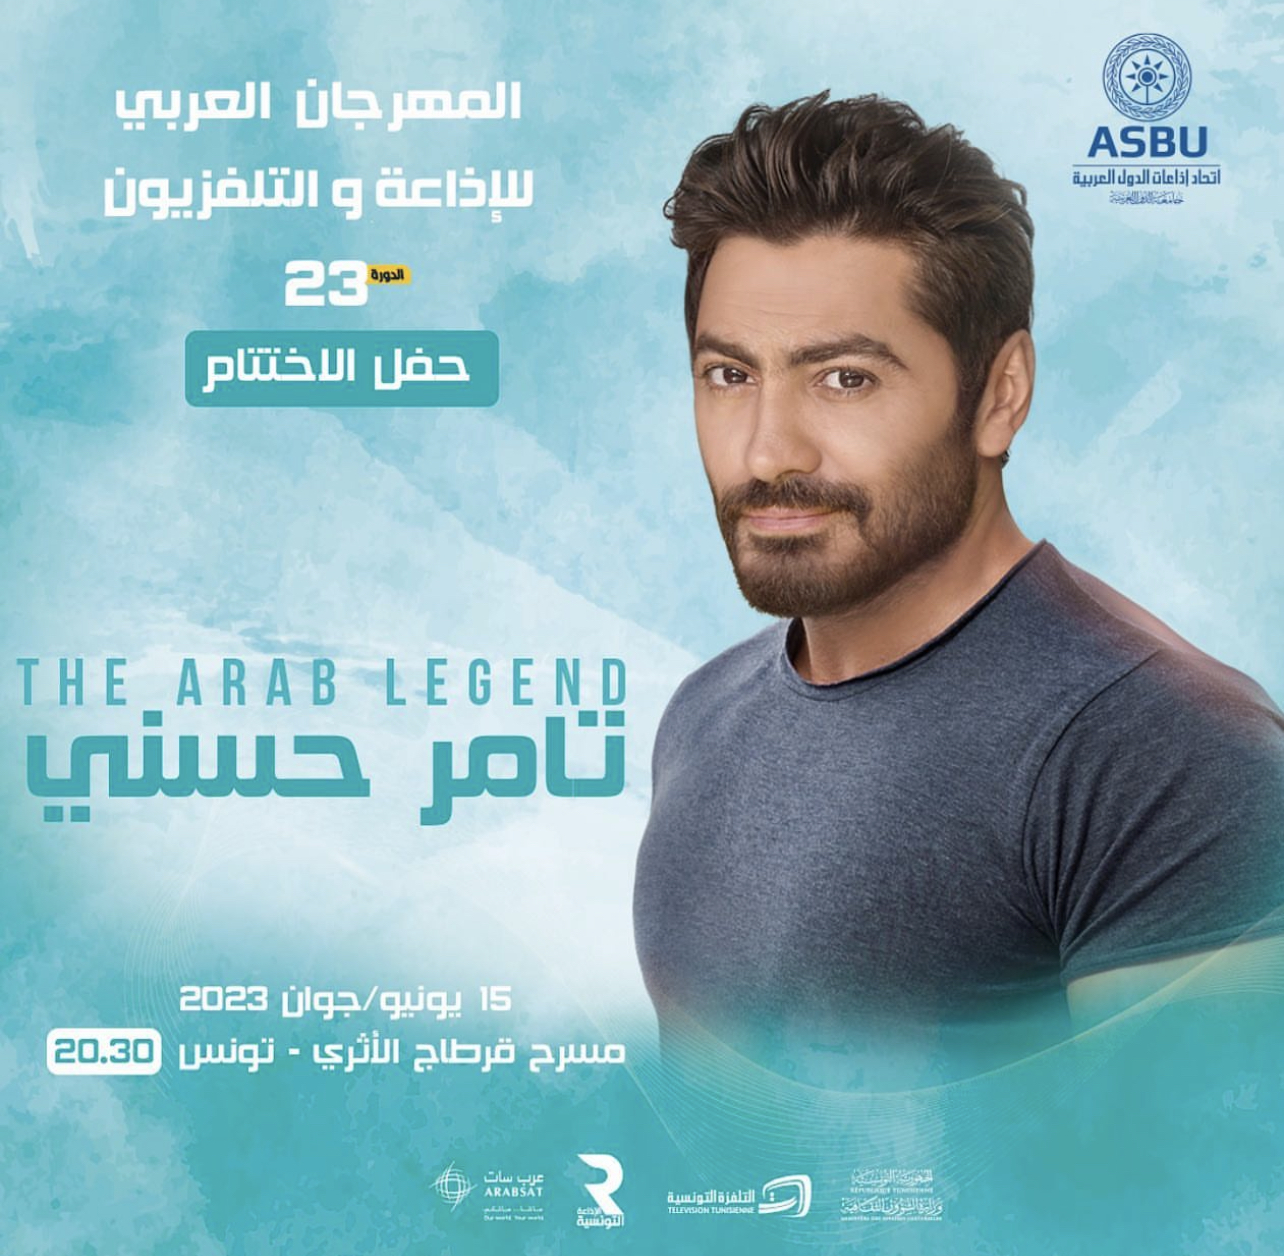 المهرجان العربي للإذاعة والتلفزيون في تونس